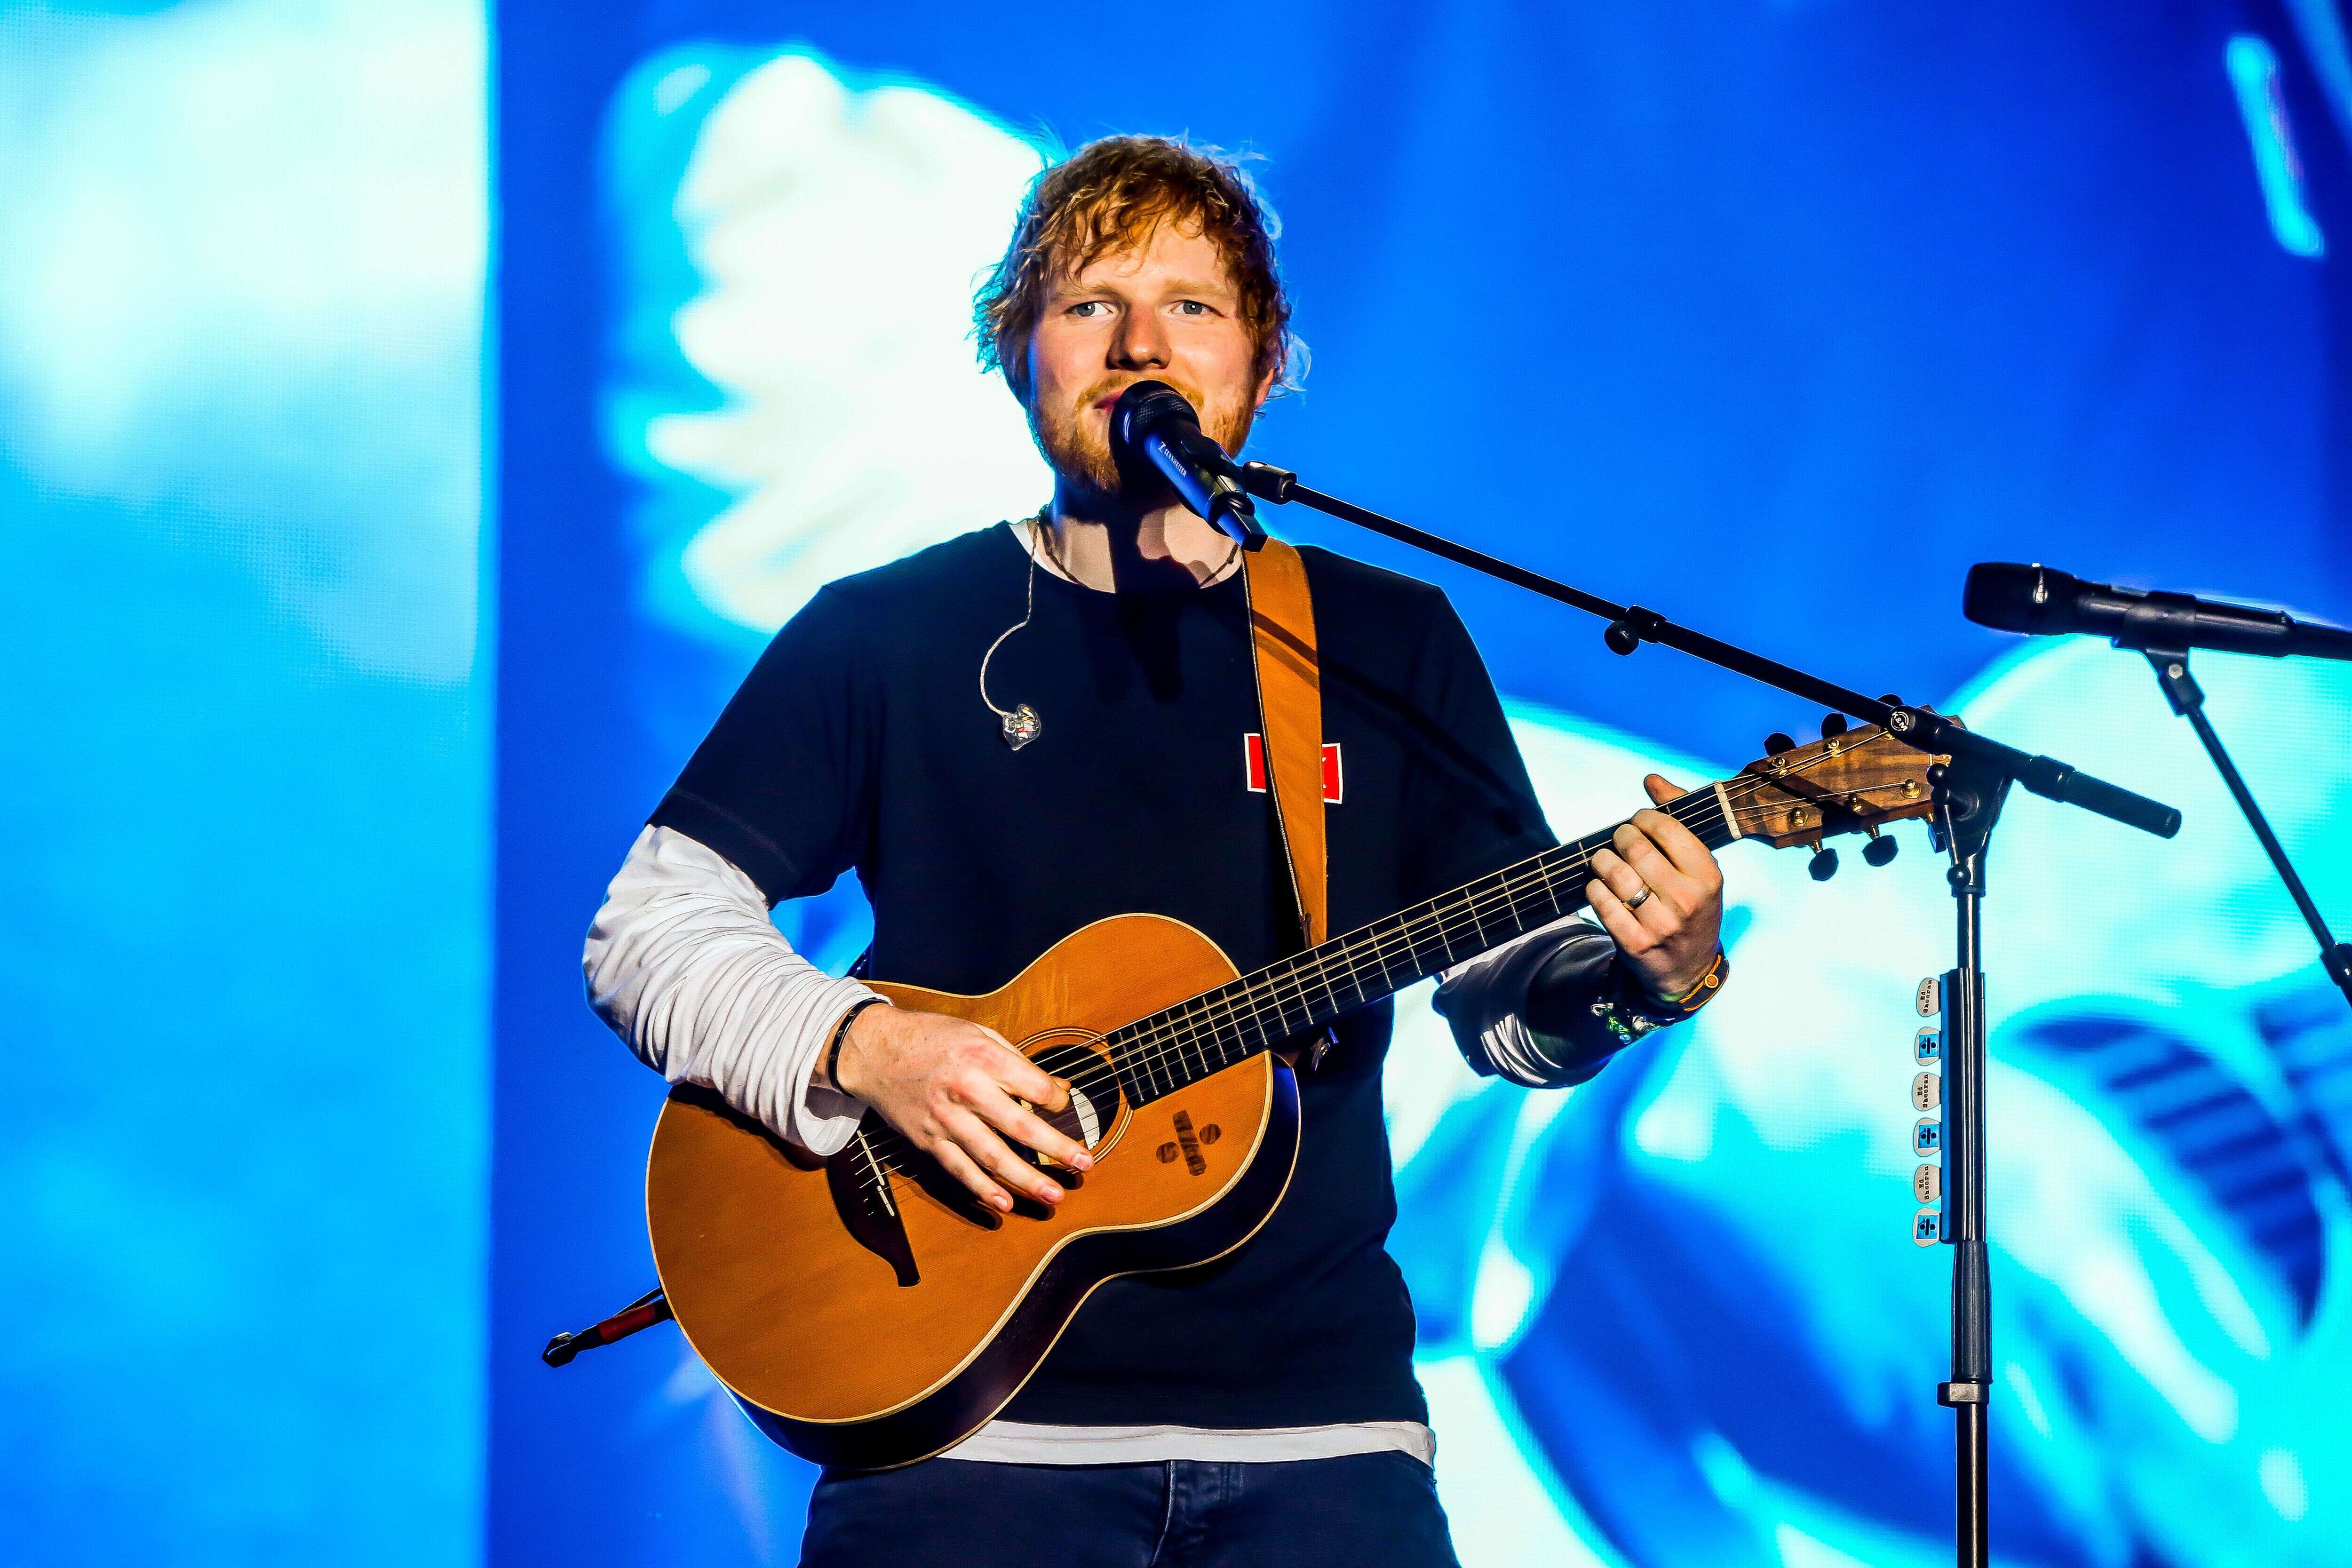 Le chanteur britannique Ed Sheeran est papa d'une petite fille